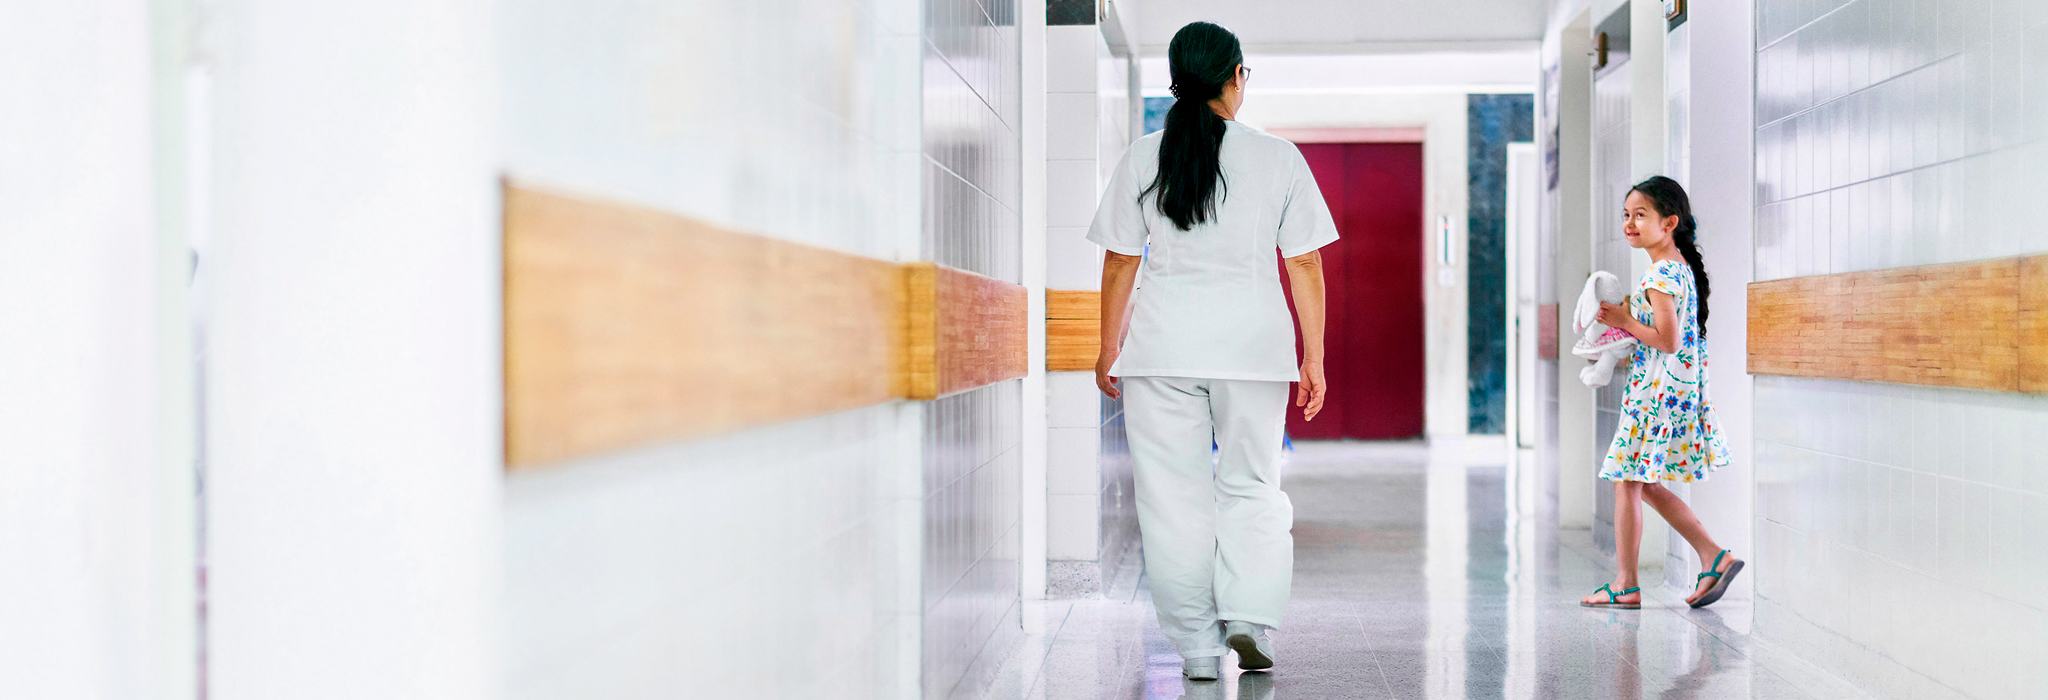 Медсестра та пацієнт у коридорі закладу охорони здоров’я